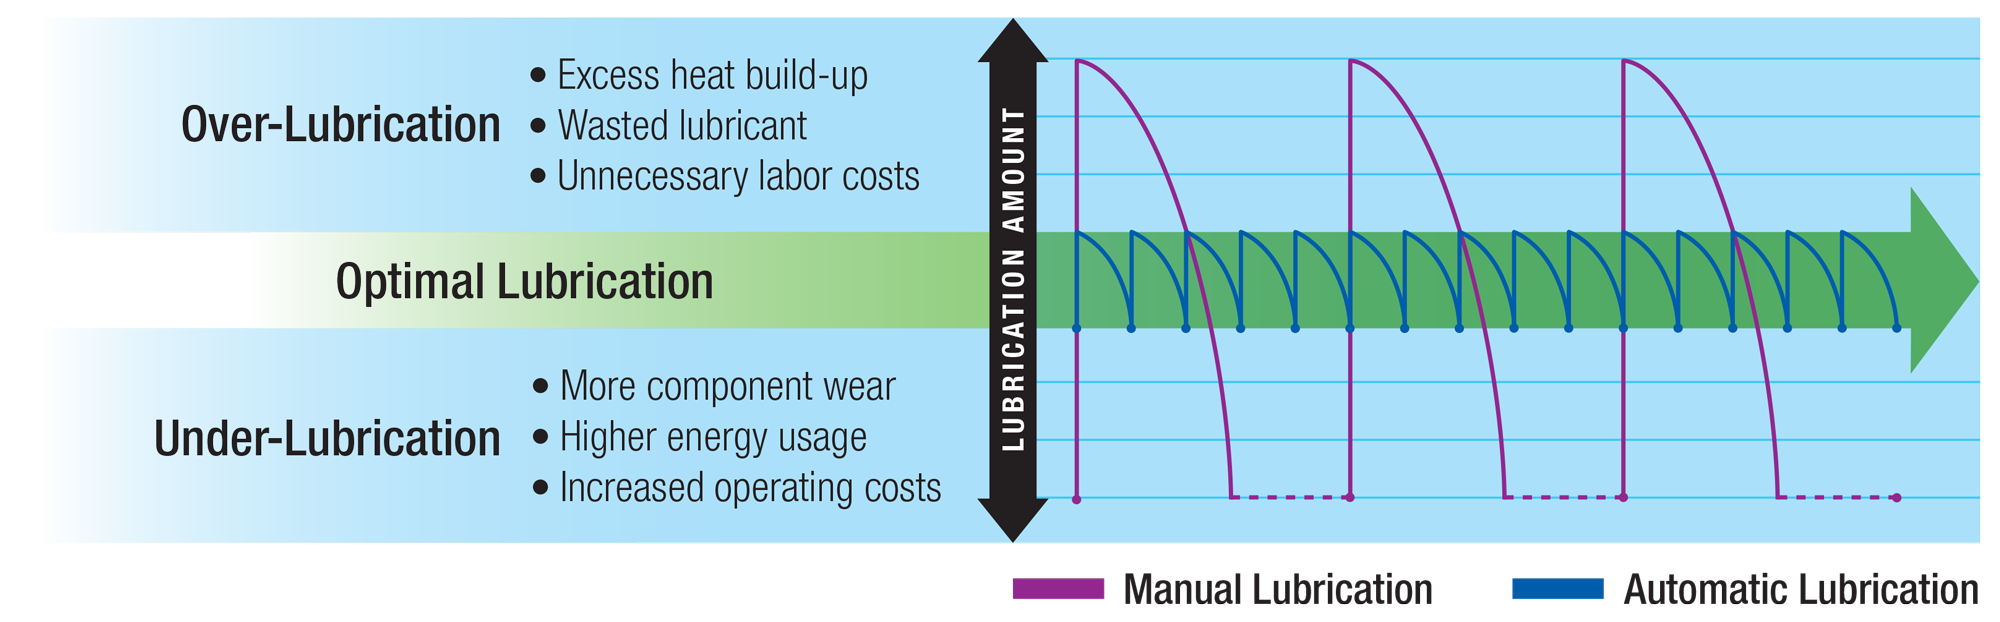 diagramme de lubrification automatique